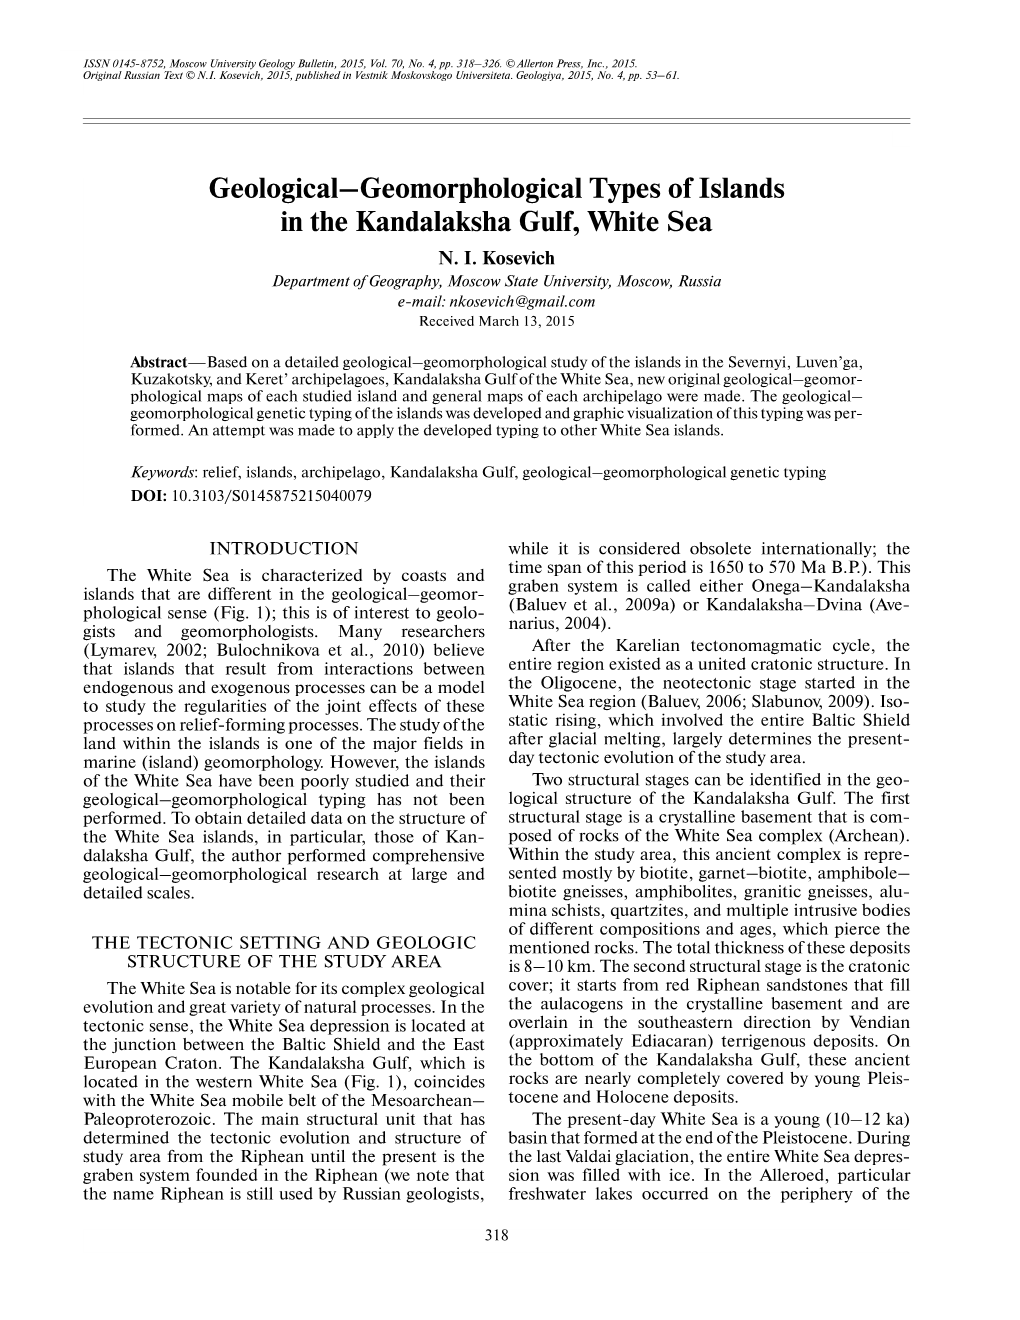 Geological–Geomorphological Types of Islands in the Kandalaksha Gulf, White Sea N